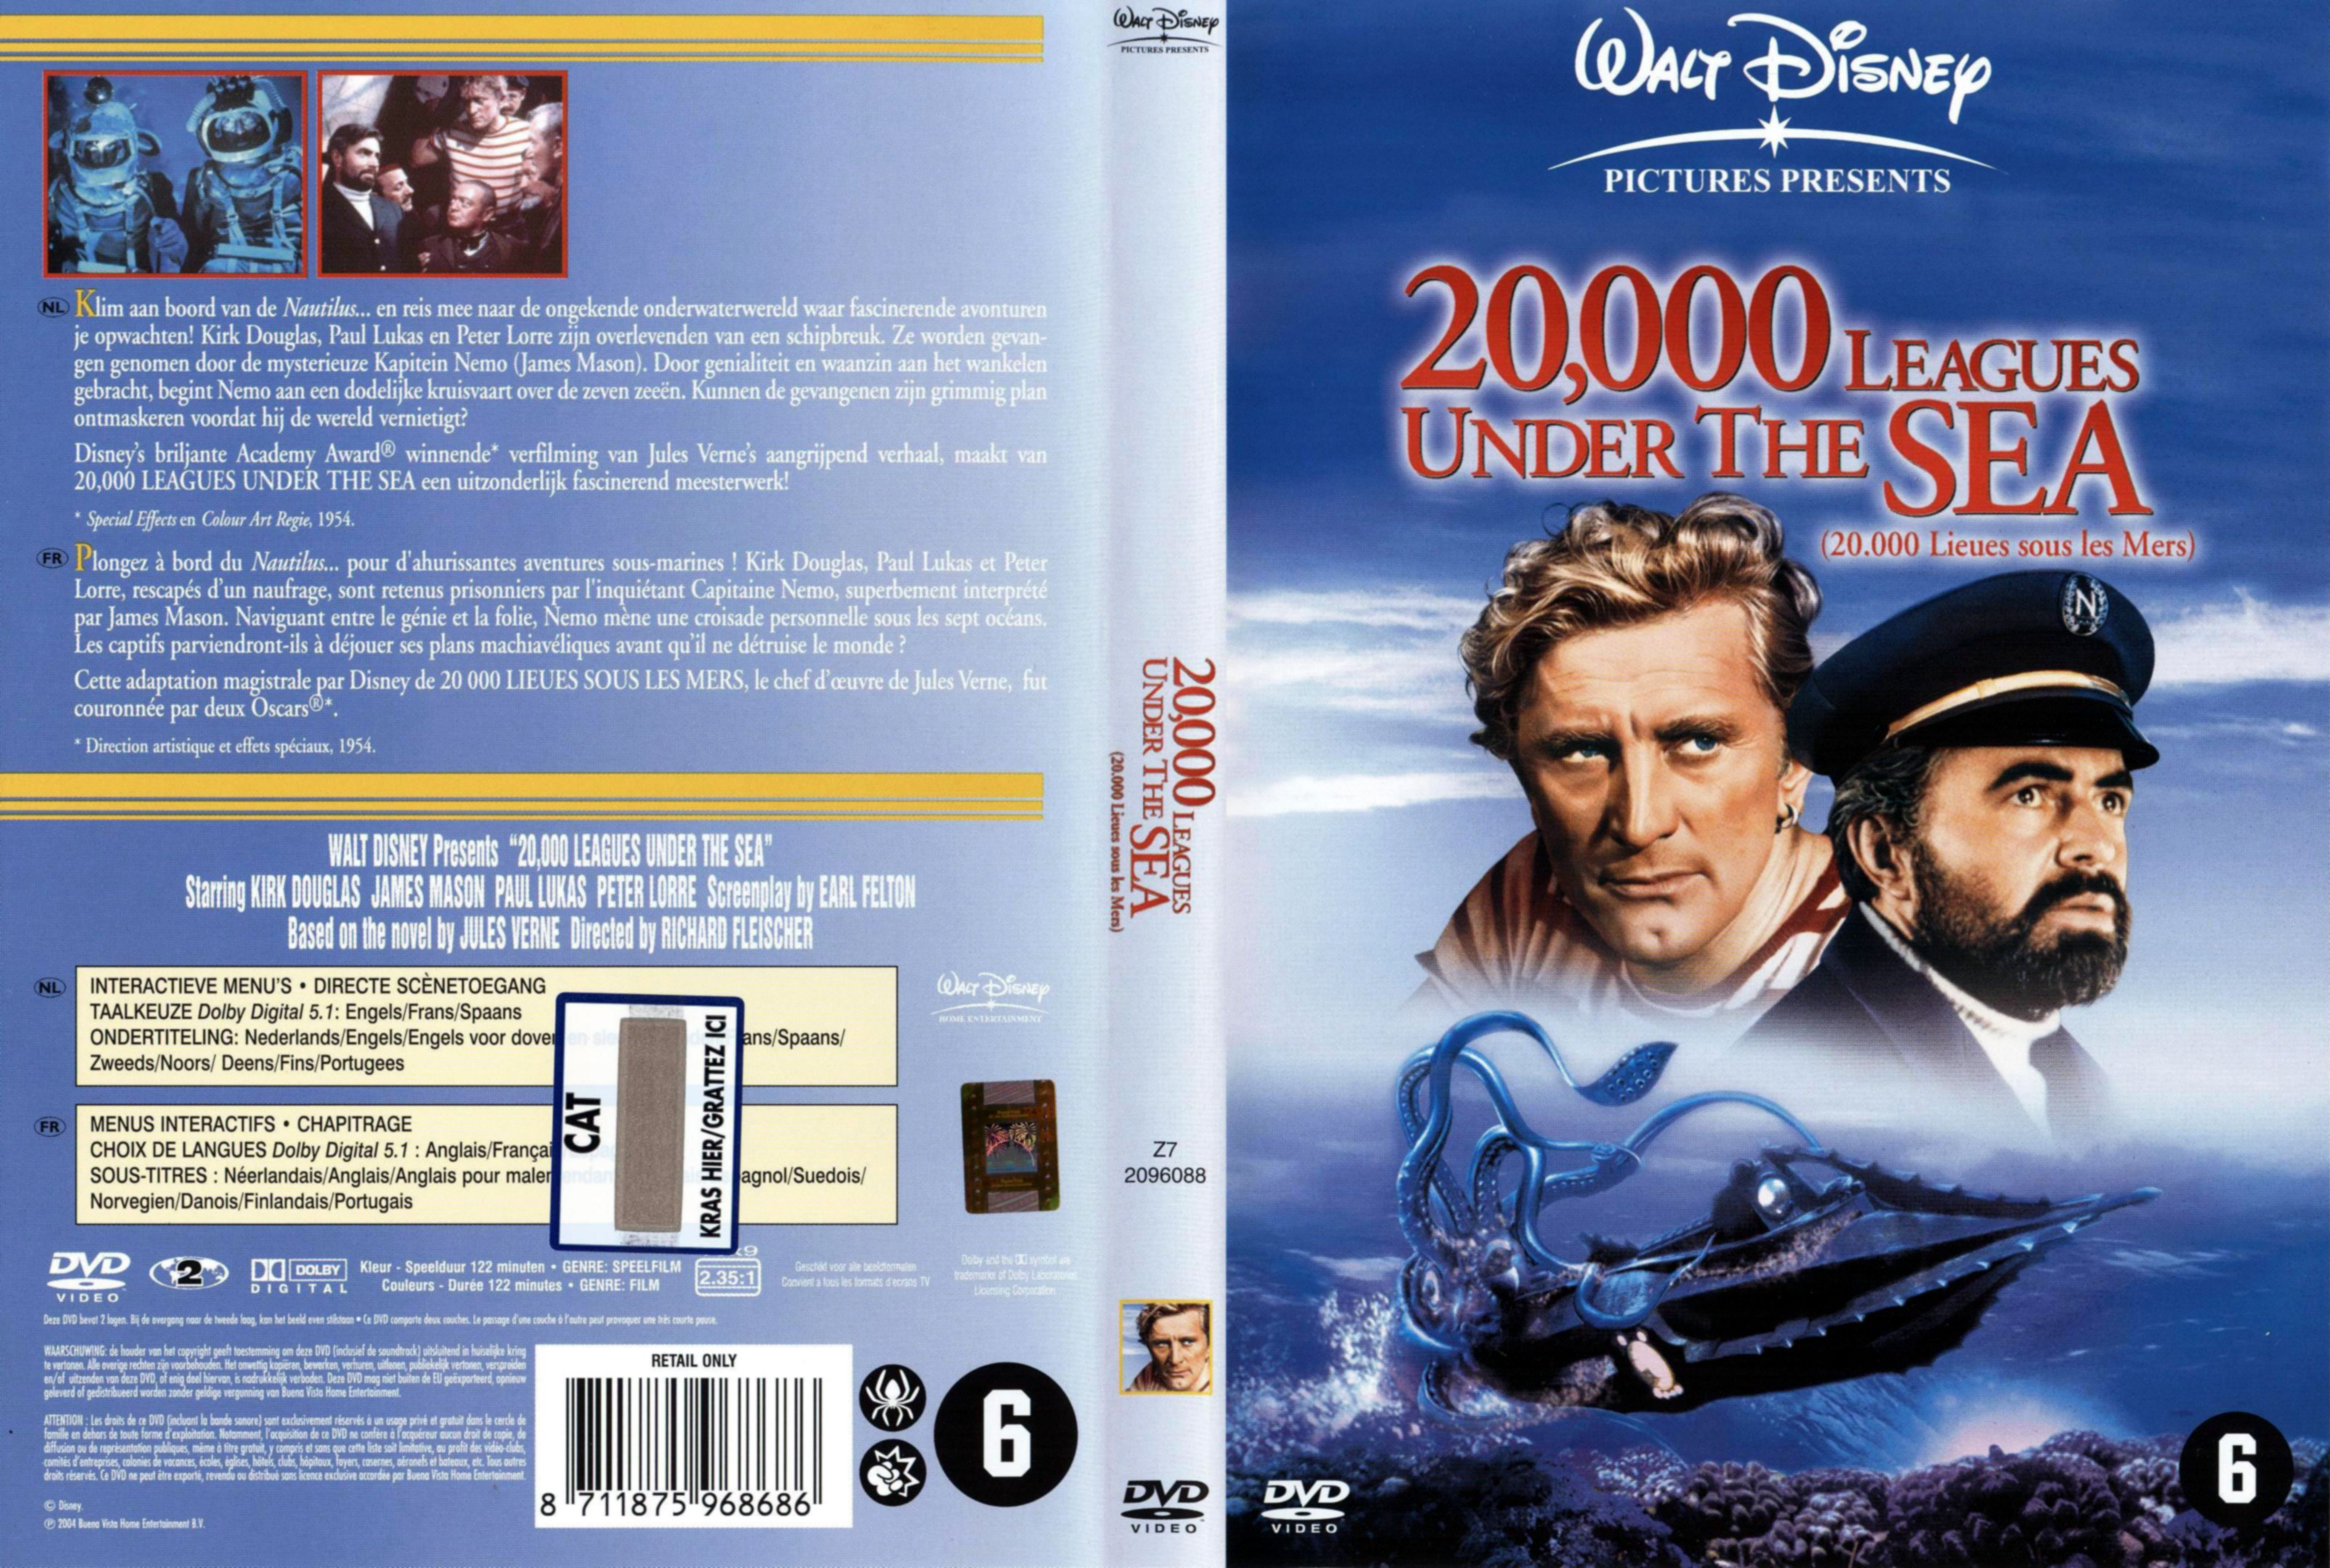 Jaquette DVD 20000 lieues sous les mers v2